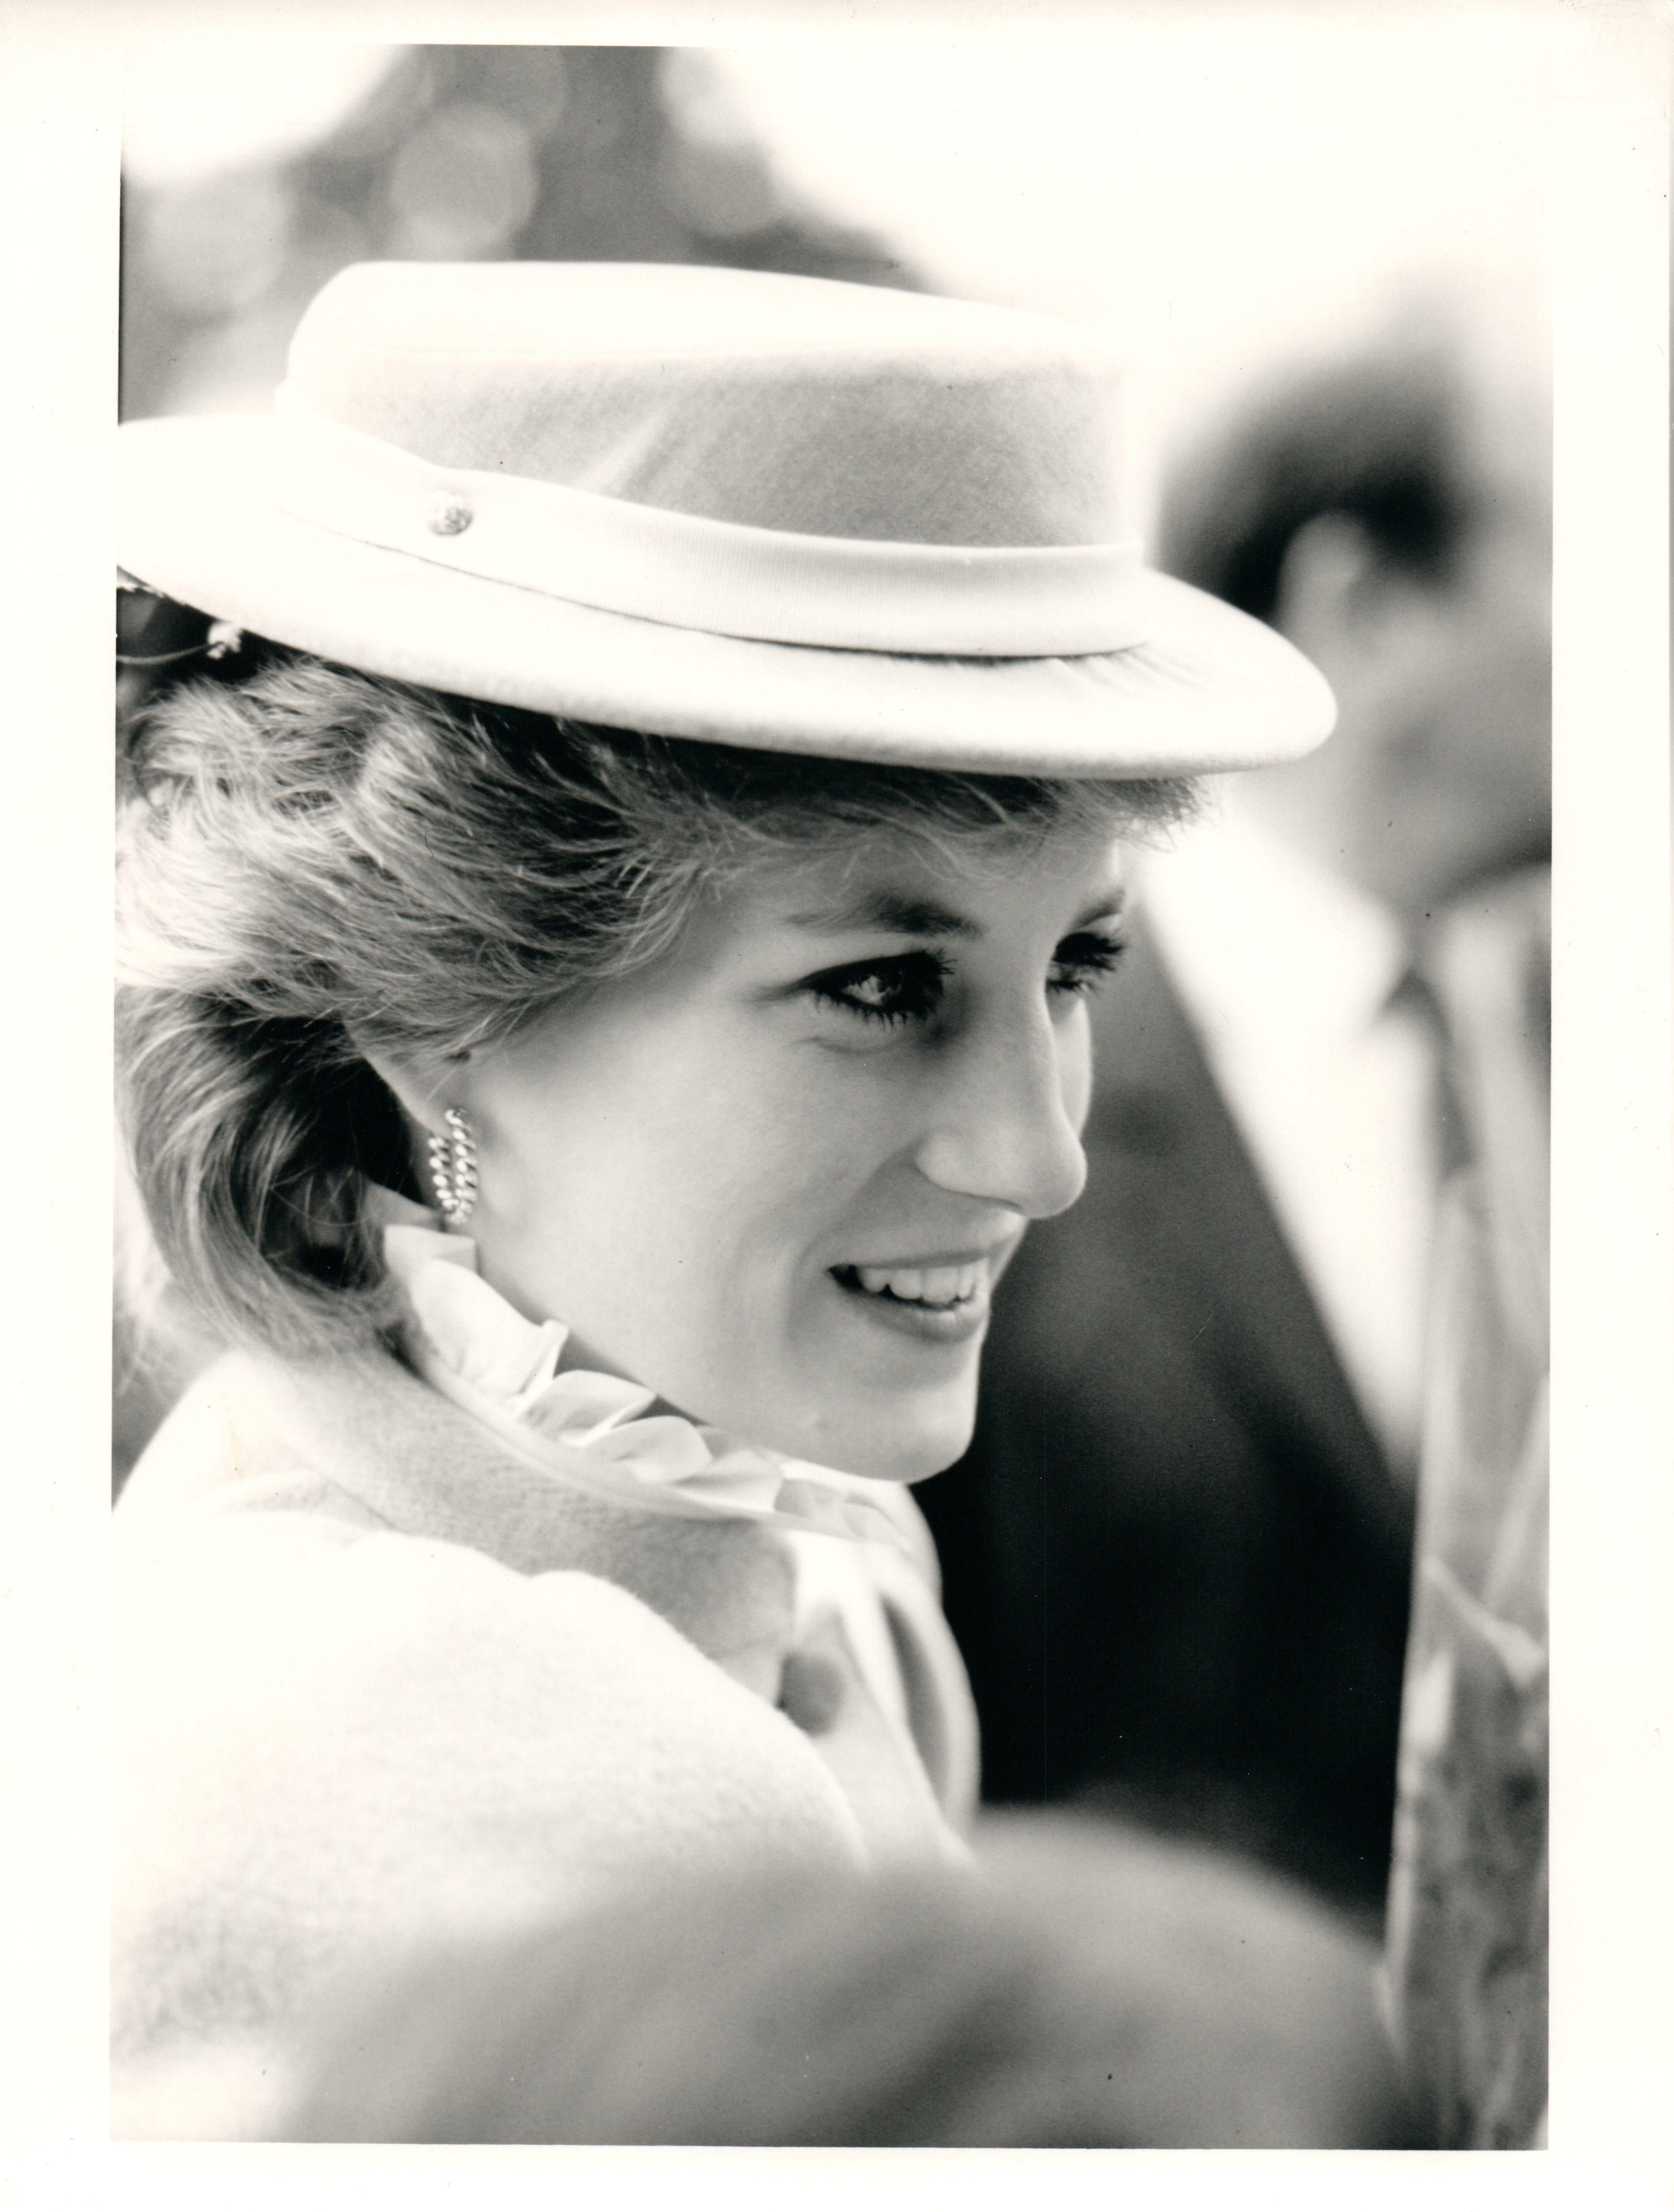 Phil Loftus Portrait Photograph - Candid Princess Diana in Hat Vintage Original Photograph